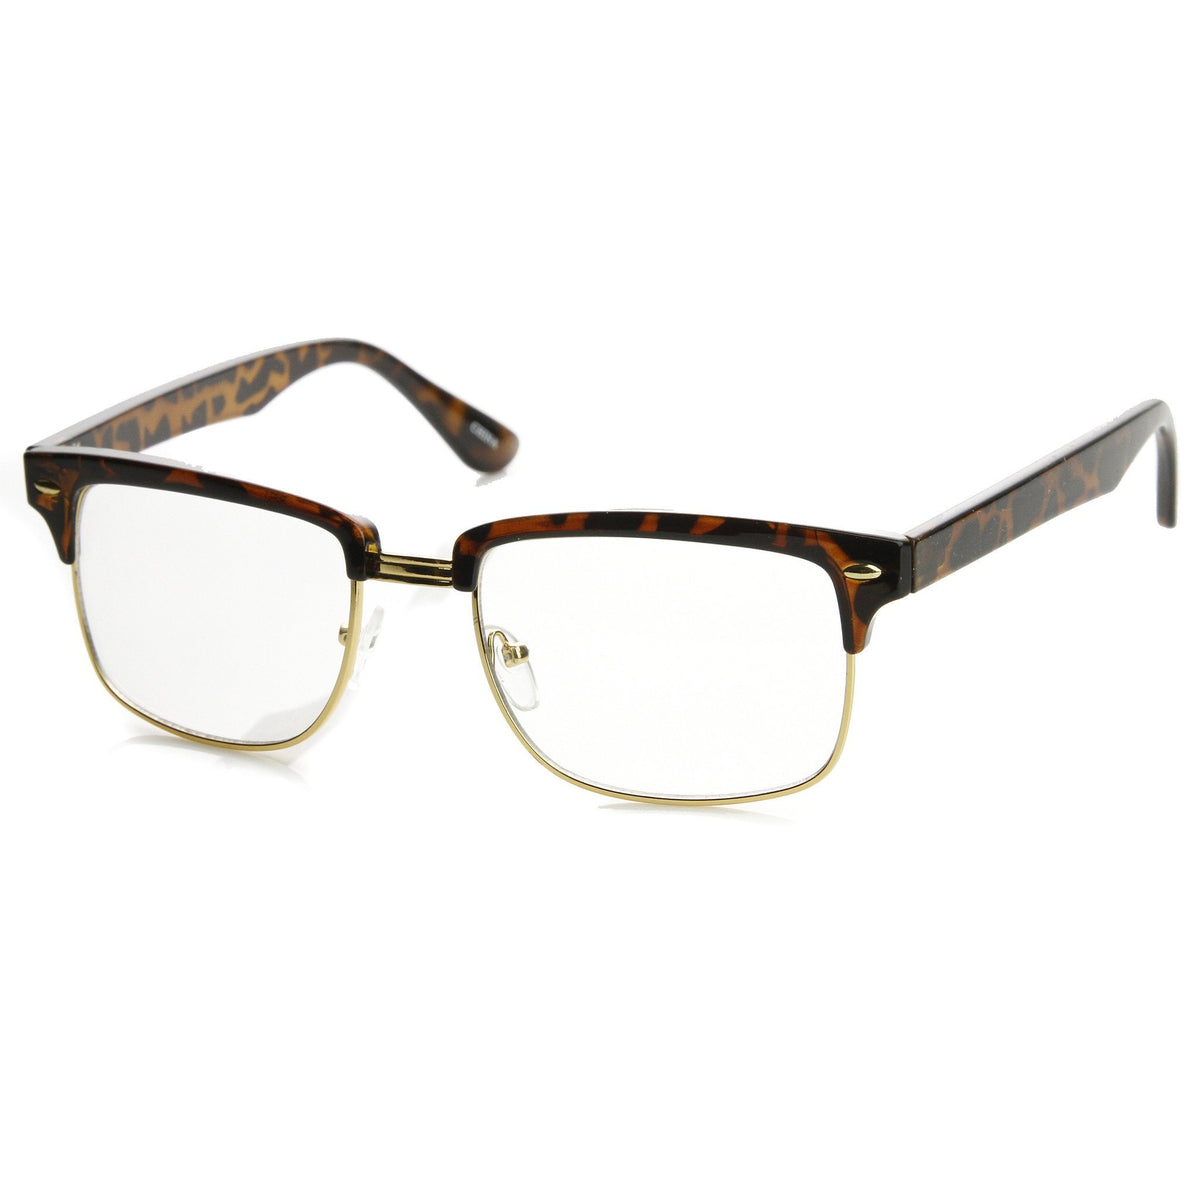 Classic Square Vintage Clear Lens Half Frame Horned Rim Glasses